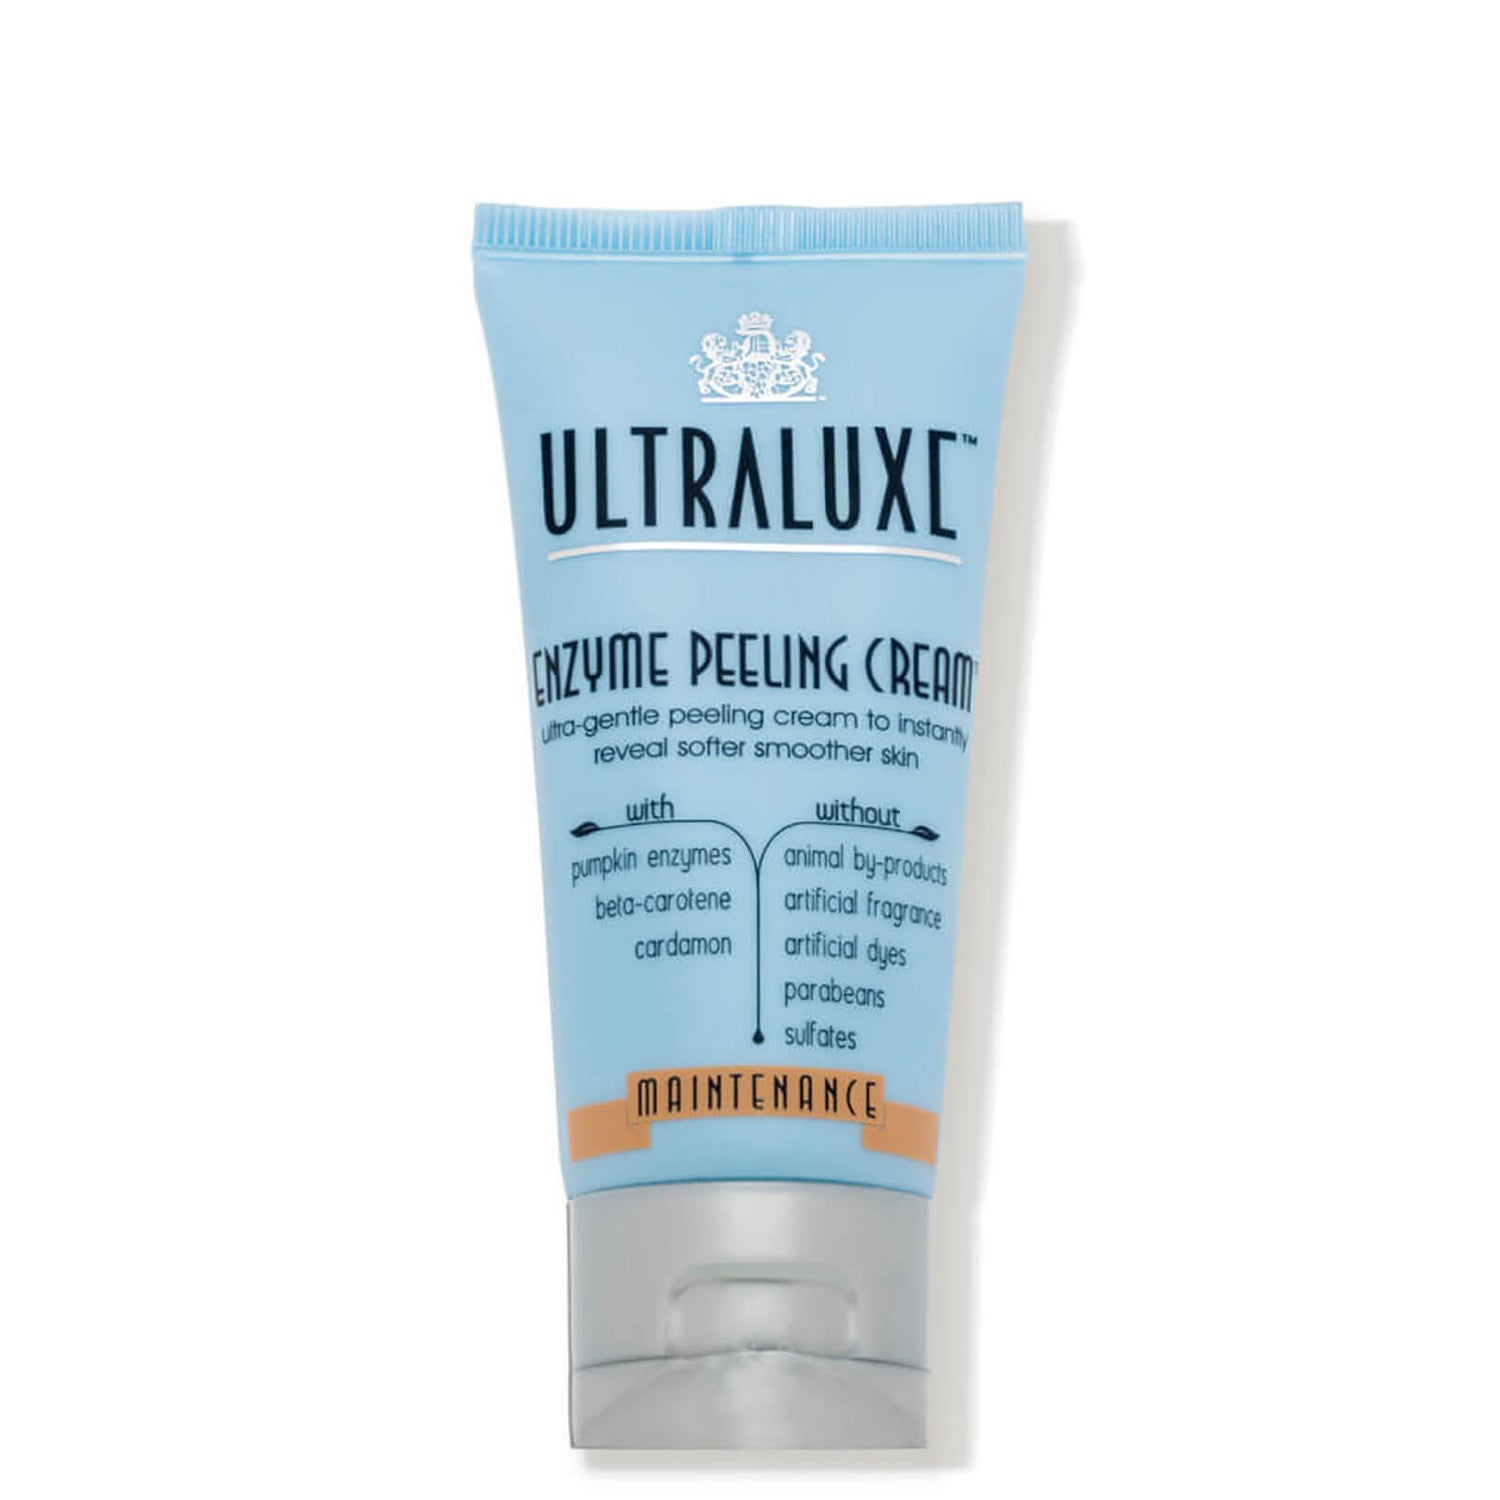 UltraLuxe Enzyme Peeling Cream (1.75 fl. oz.)